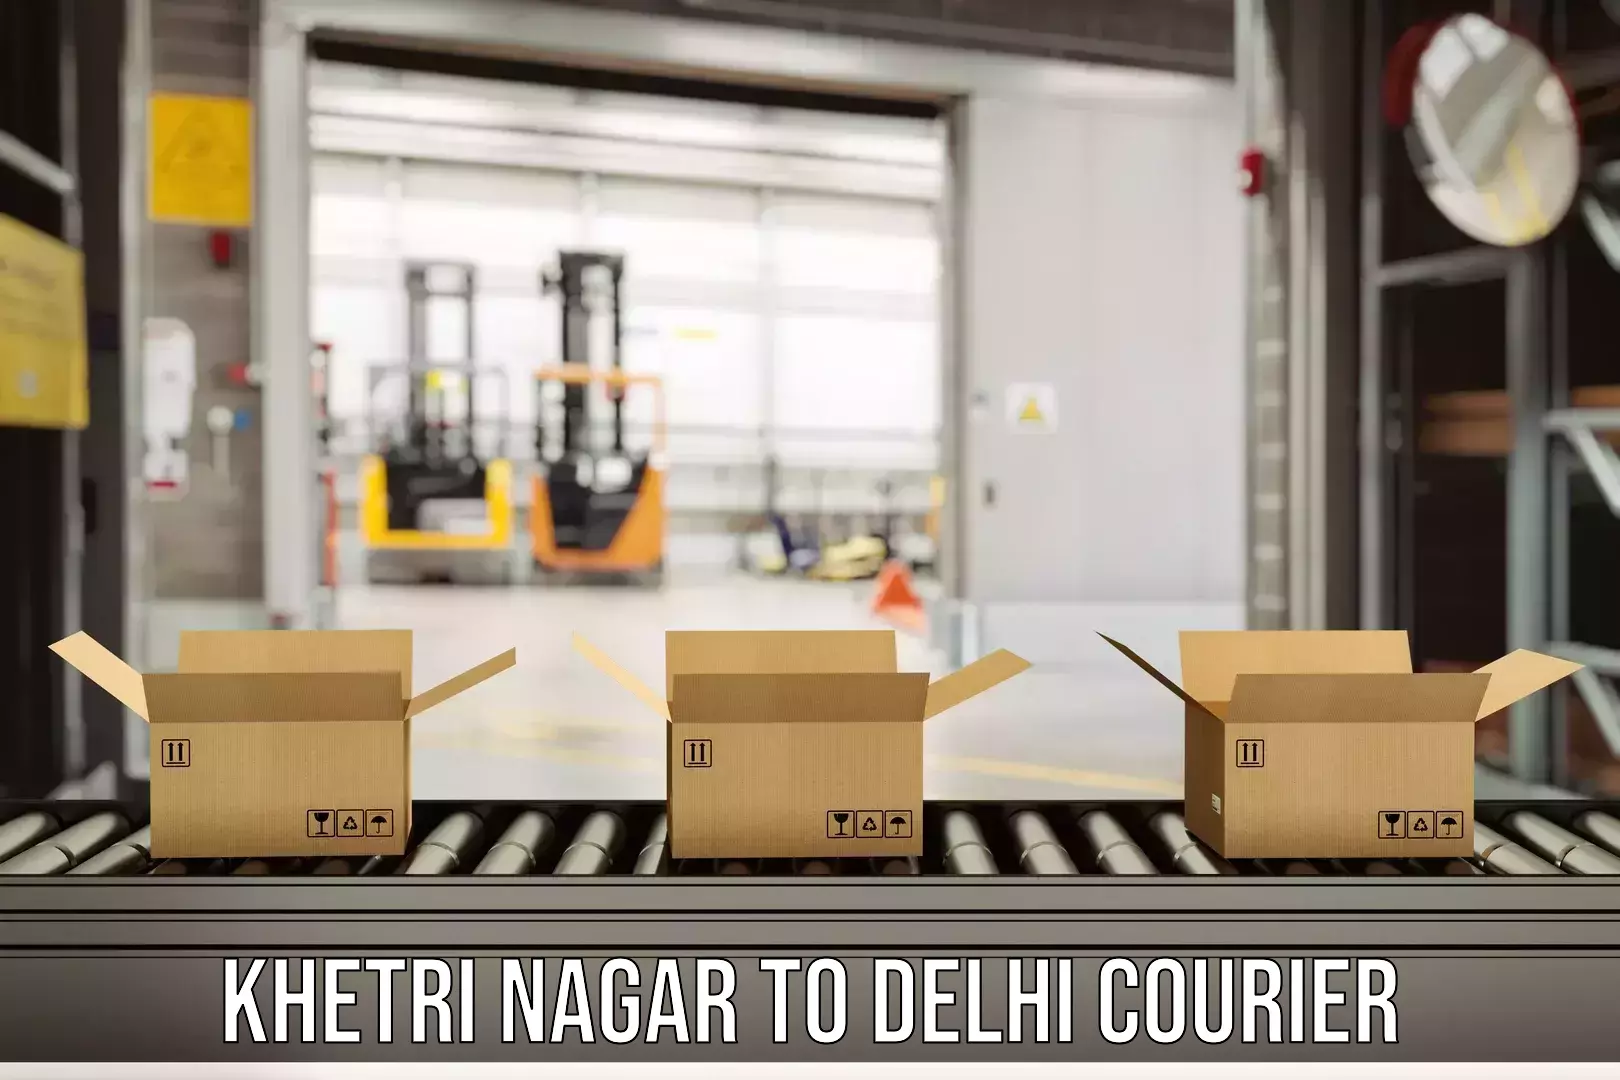 Courier app Khetri Nagar to NCR